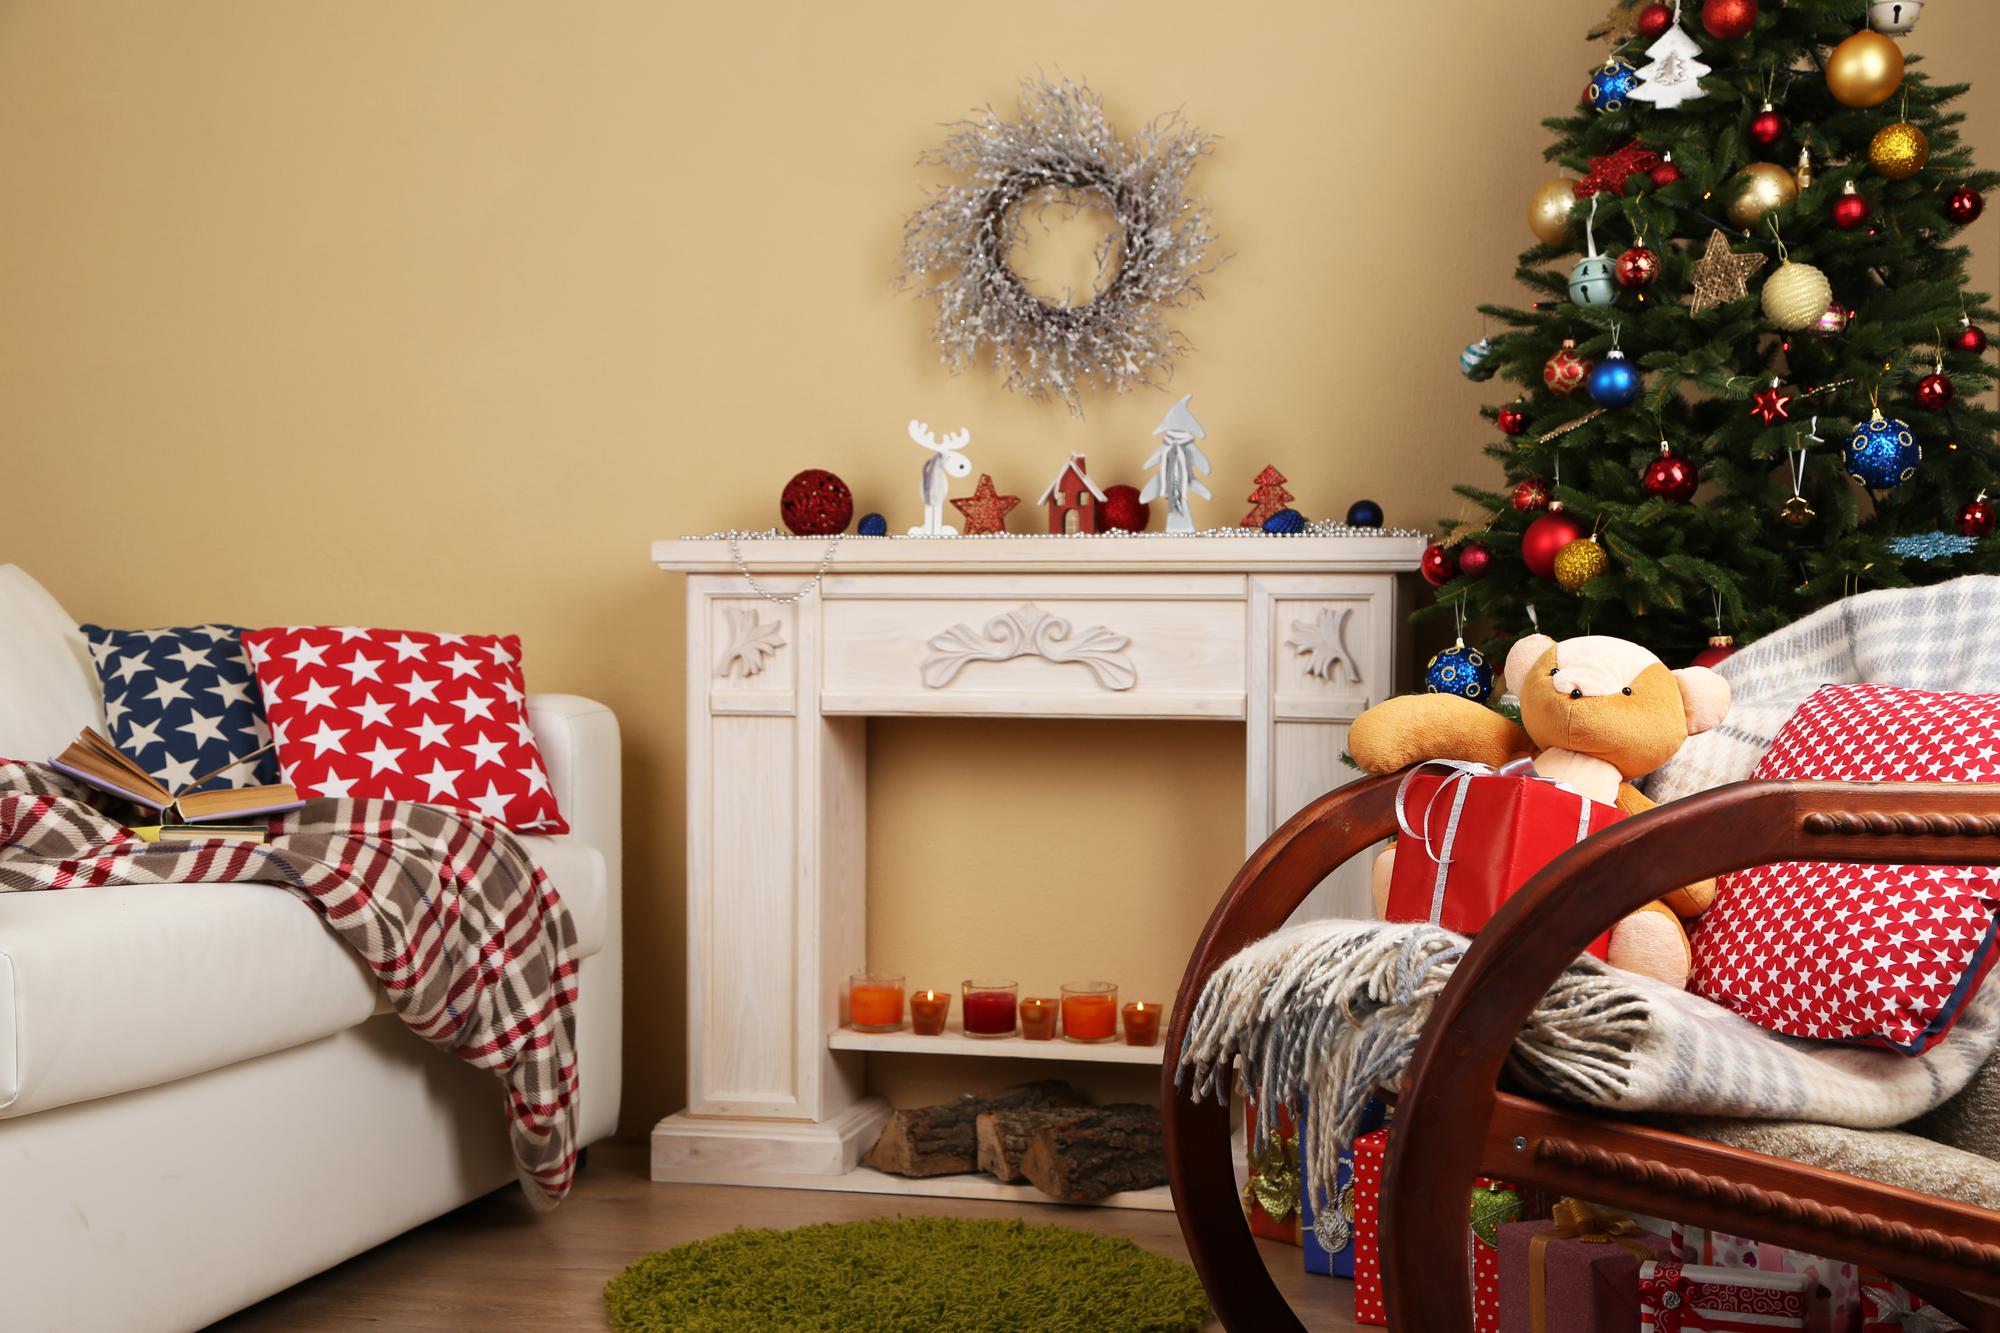 Schönes weihnachtsinterieur mit dekorativem kamin und tannenbaum